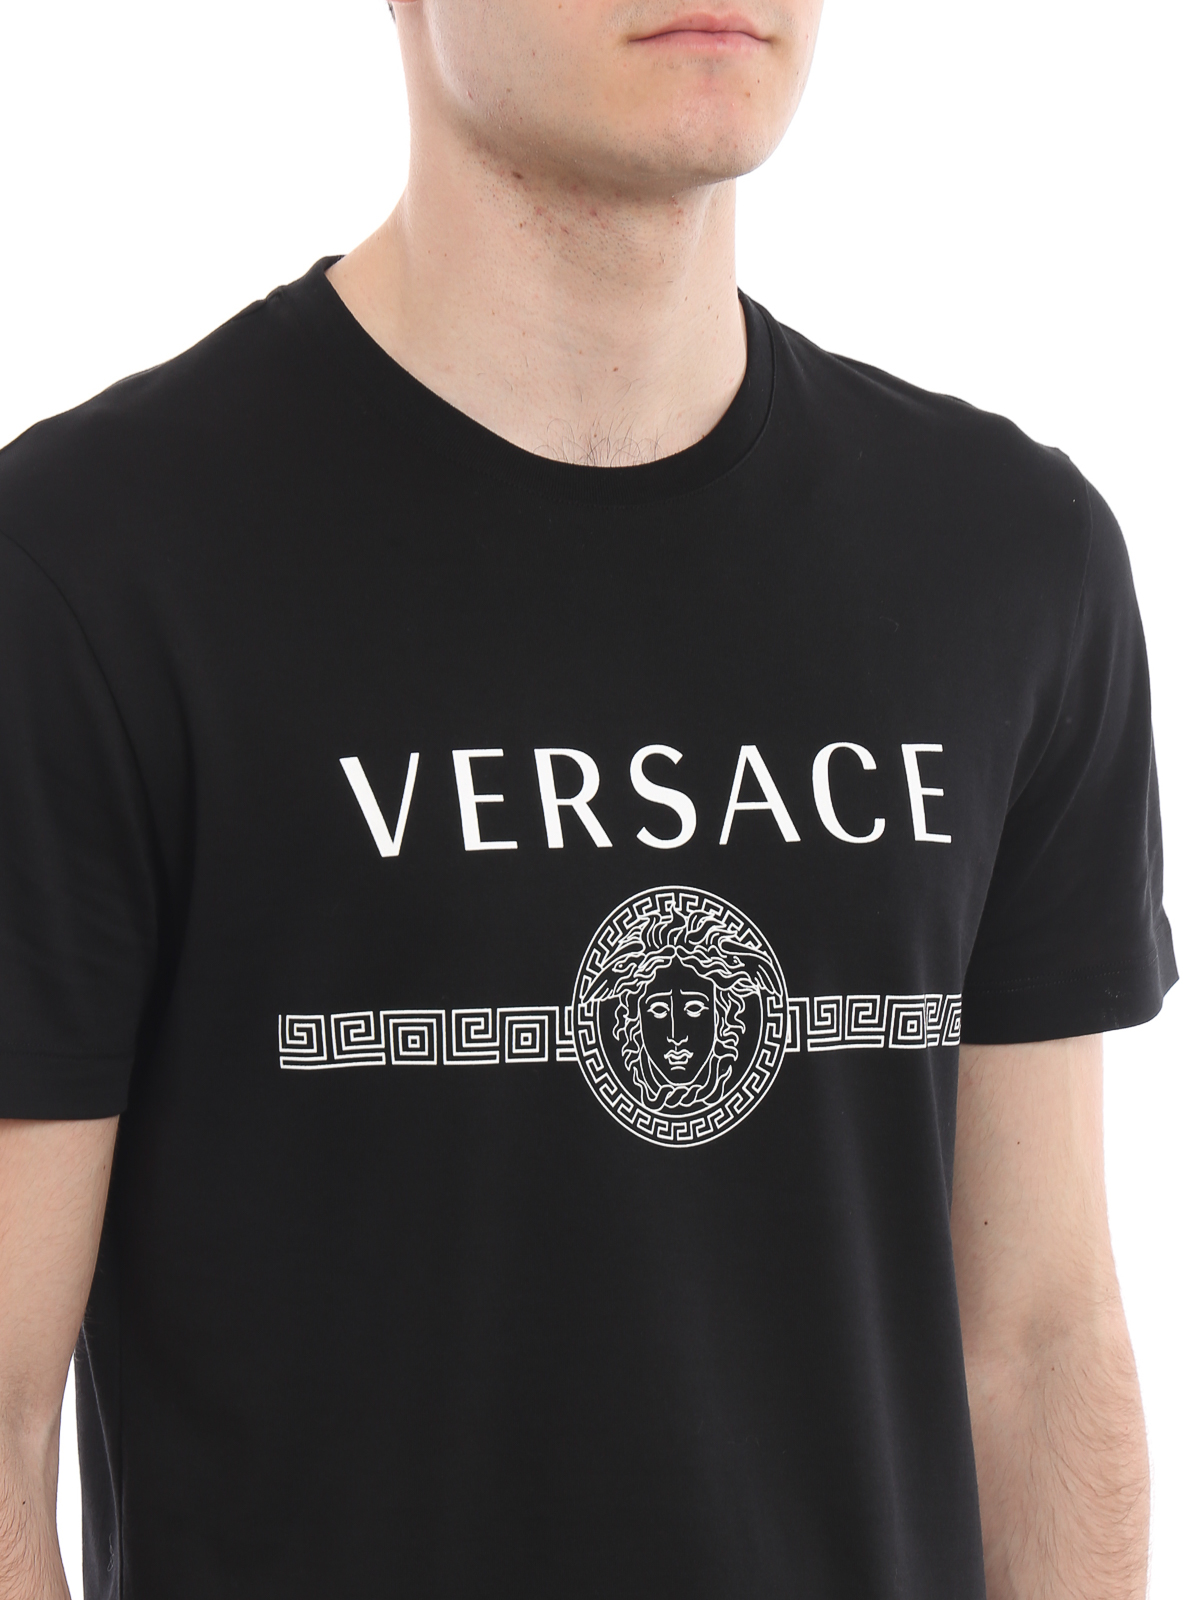 versace t shirt medusa logo